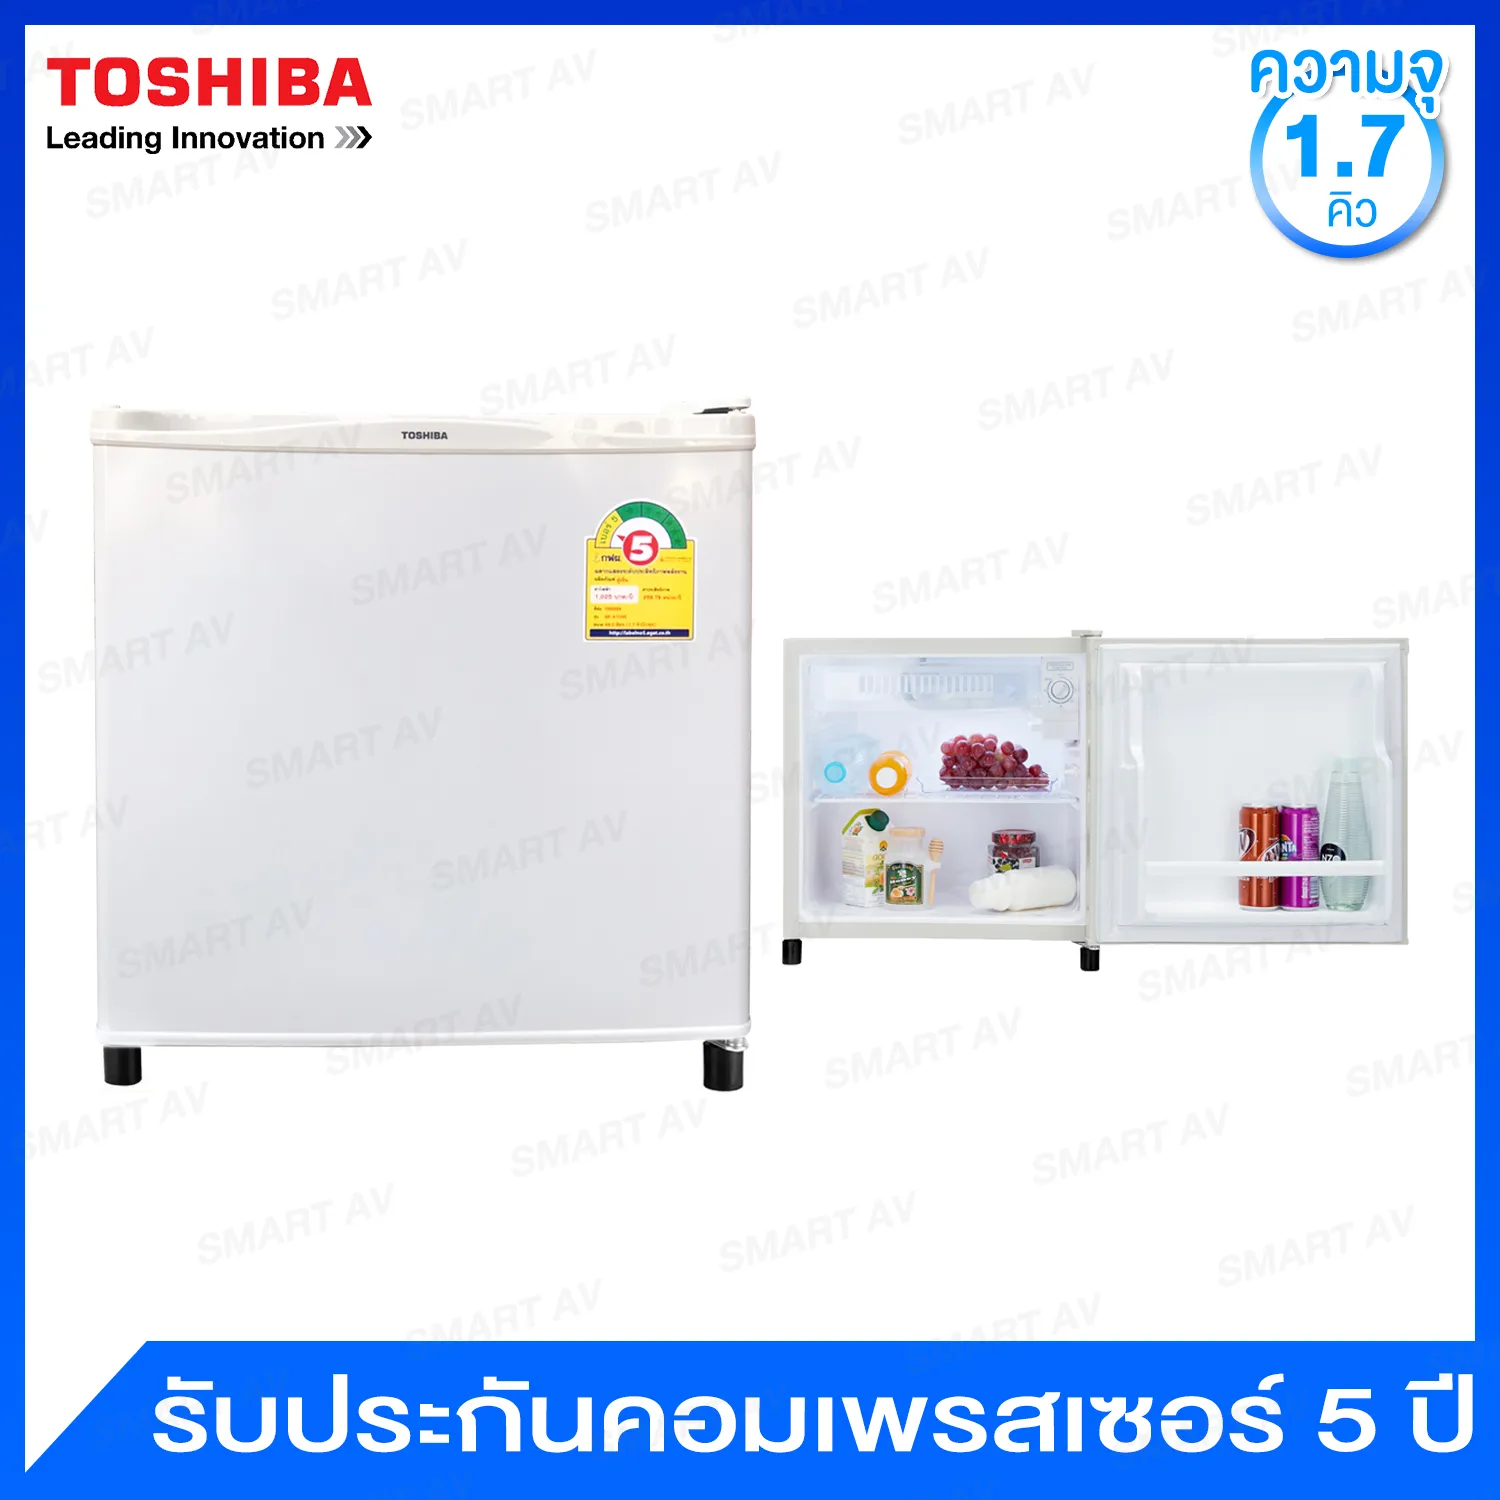 Toshiba ตู้เย็น MINI BAR ความจุ 1.7 คิว พร้อมไฟส่องสว่างภายในตัวตู้ รุ่น GR-A706C-I (สีเทา)